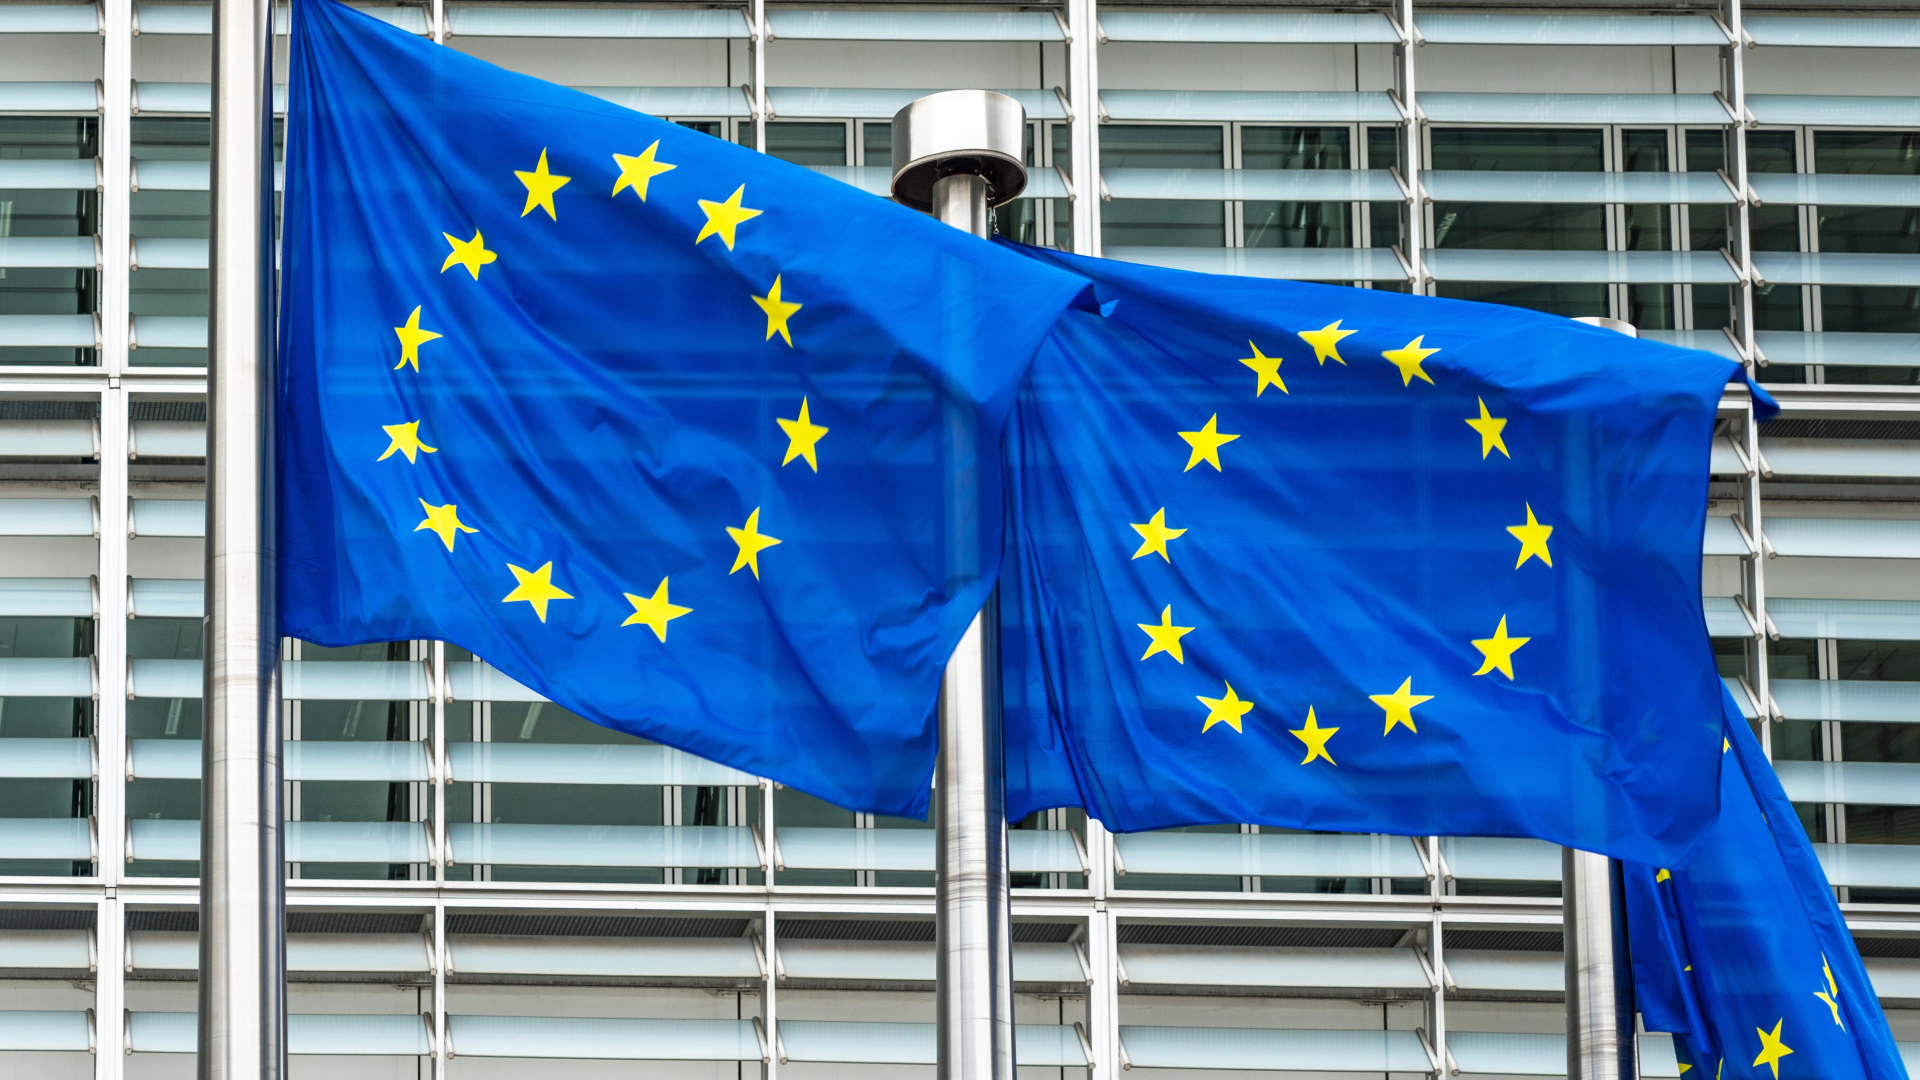 Flaggen vor dem Sitz der Europäischen Kommission | Foto: picture alliance / Daniel Kalker